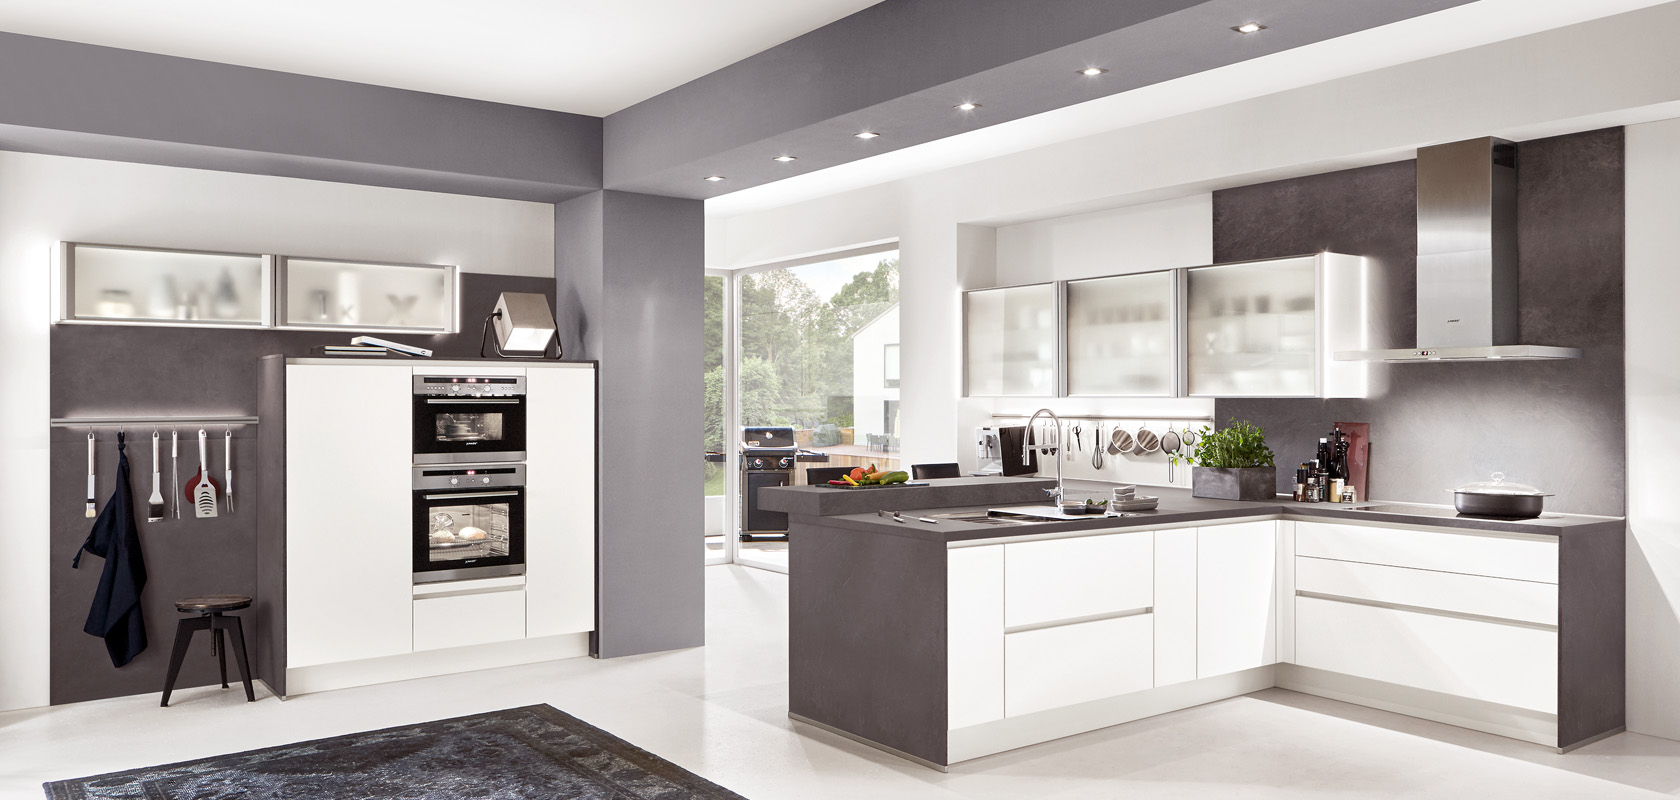 Moderní kuchyň s lesklými skříňkami, nerezovými spotřebiči a elegantním designem kombinujícím bílé a šedé tóny, nabízející moderní vzhled.